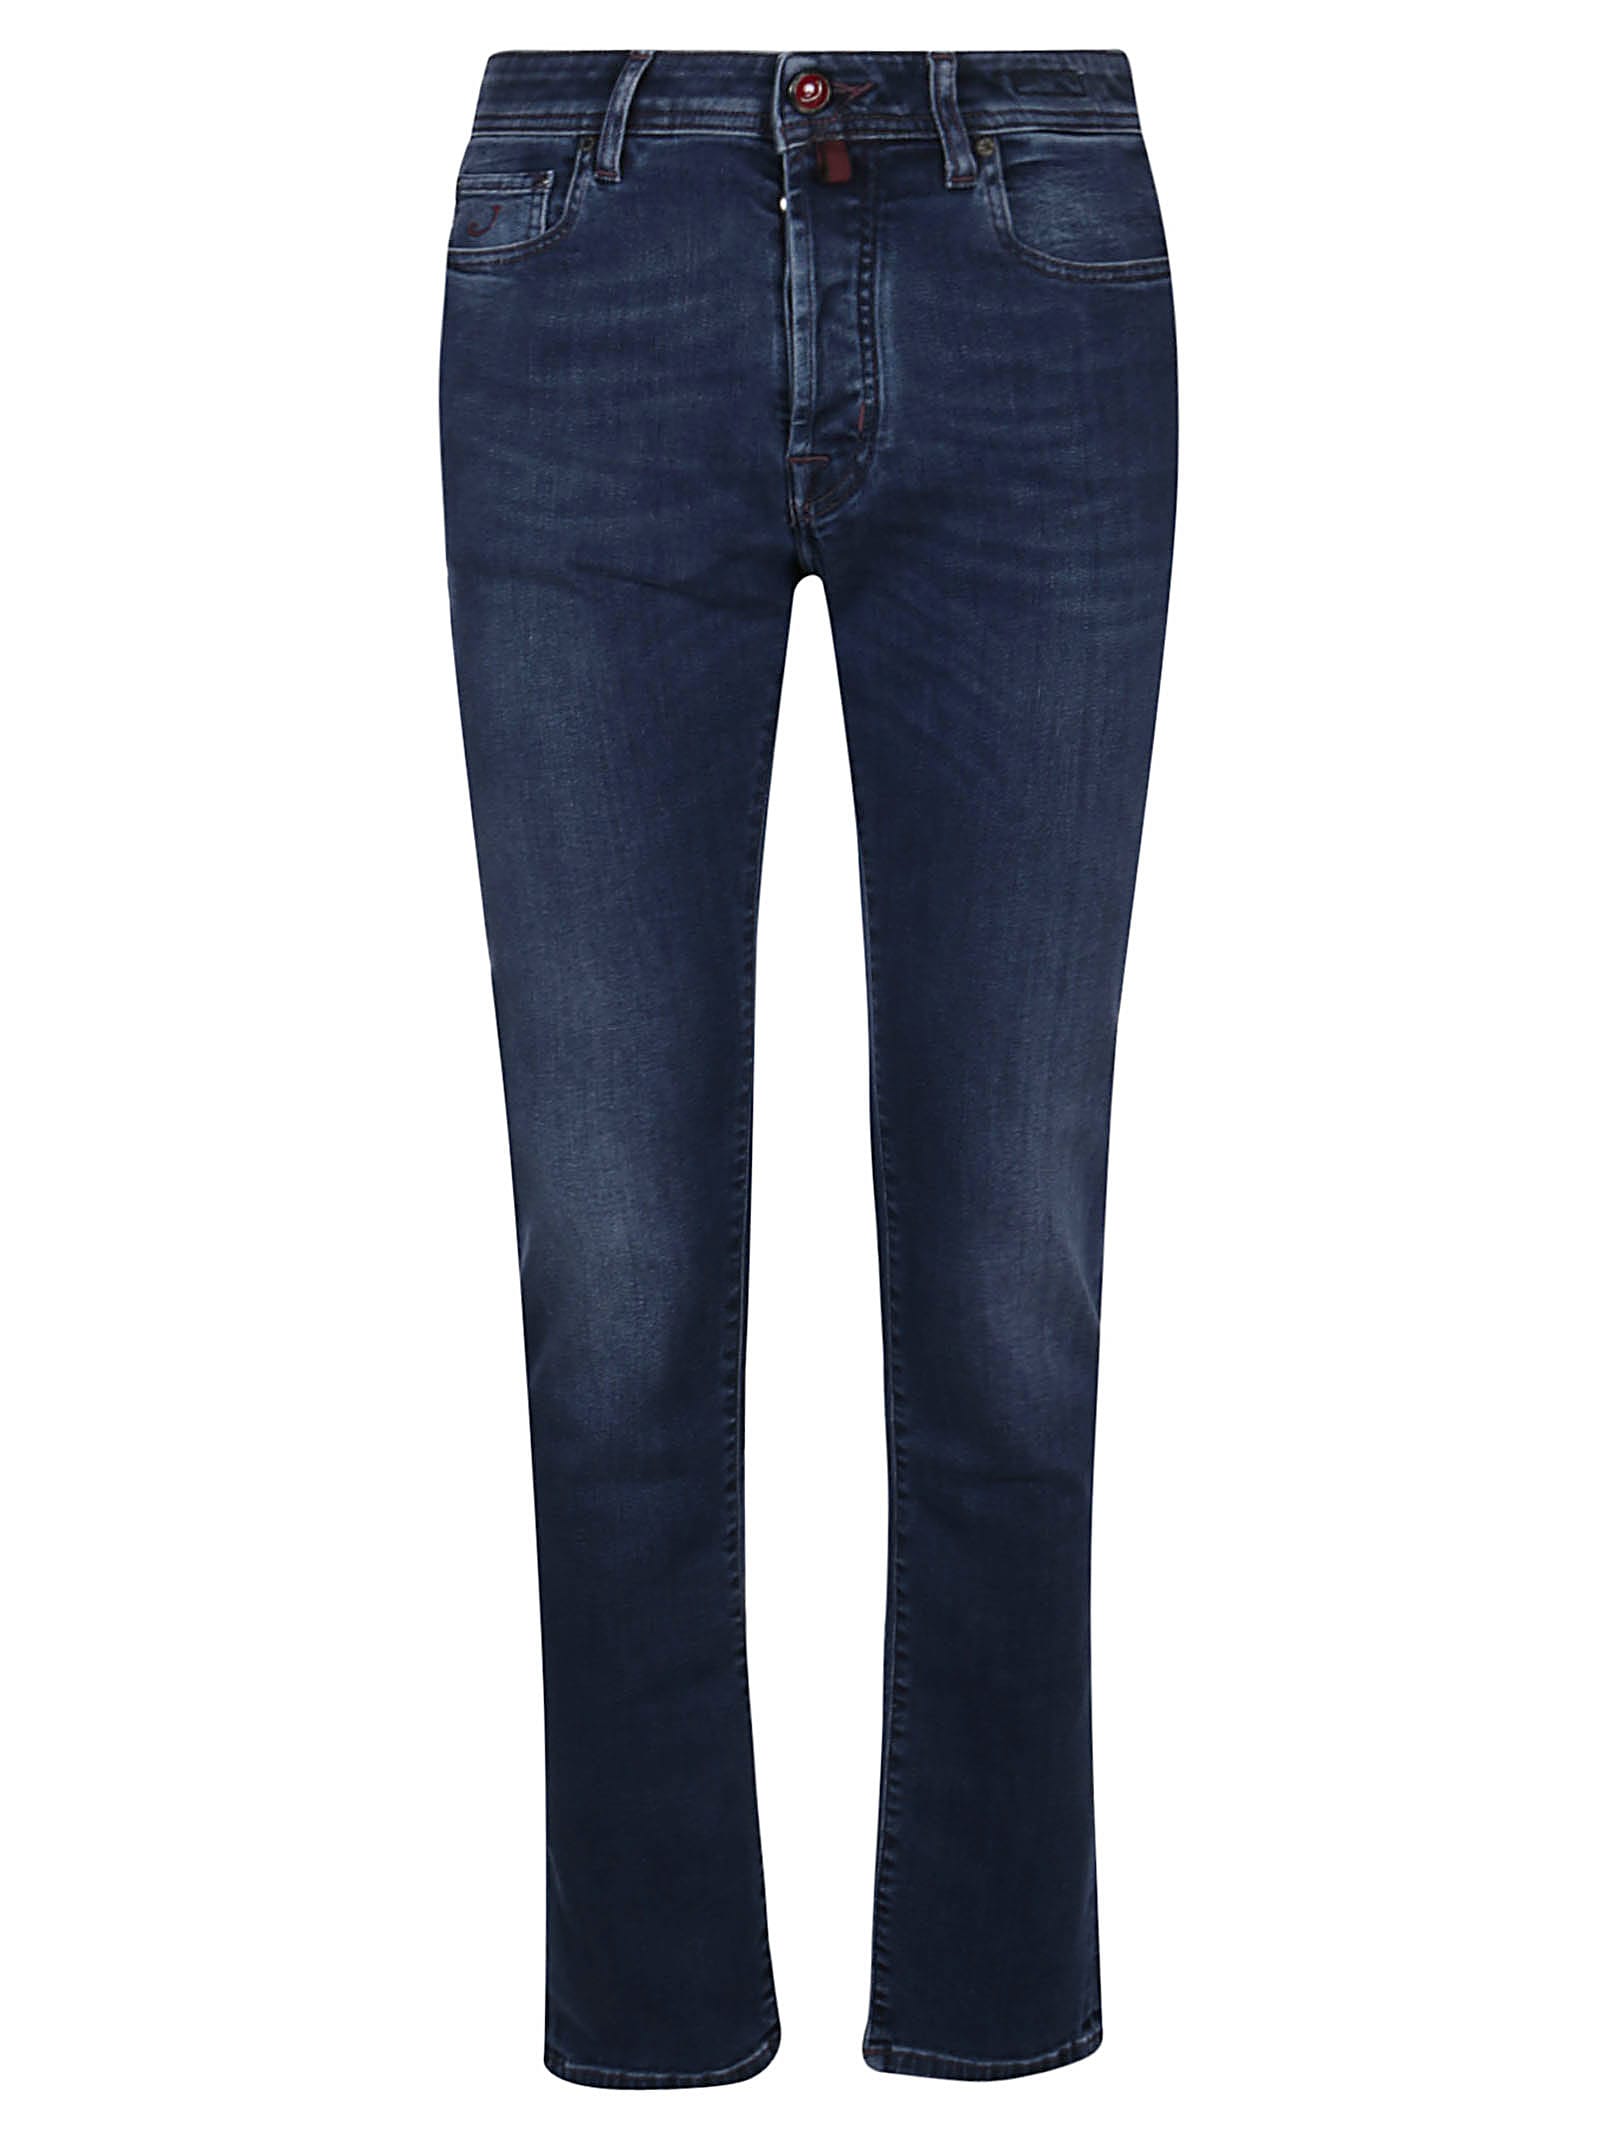 Jeans 5 Pockets Regular Slim Fit Bard Jacob Cohen